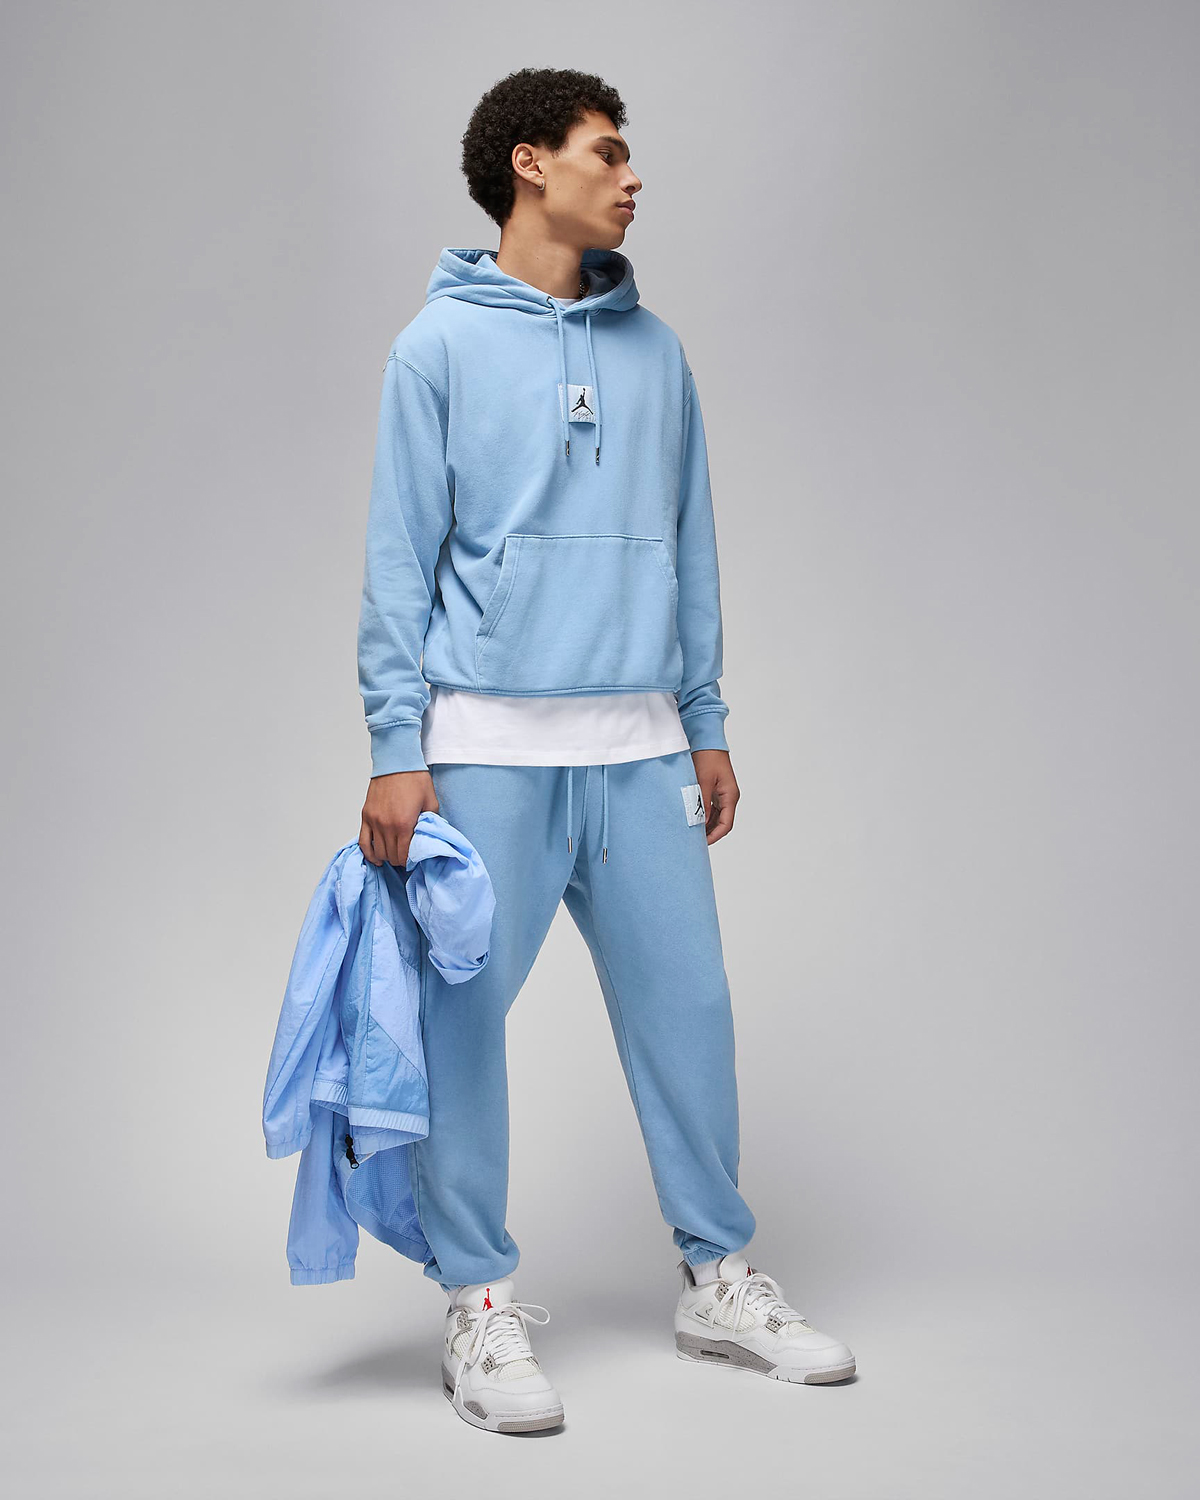 Jordan-Essentials-Fleece-Washed-Hoodie-Pants-Blue-Grey-Sneaker-Outfit